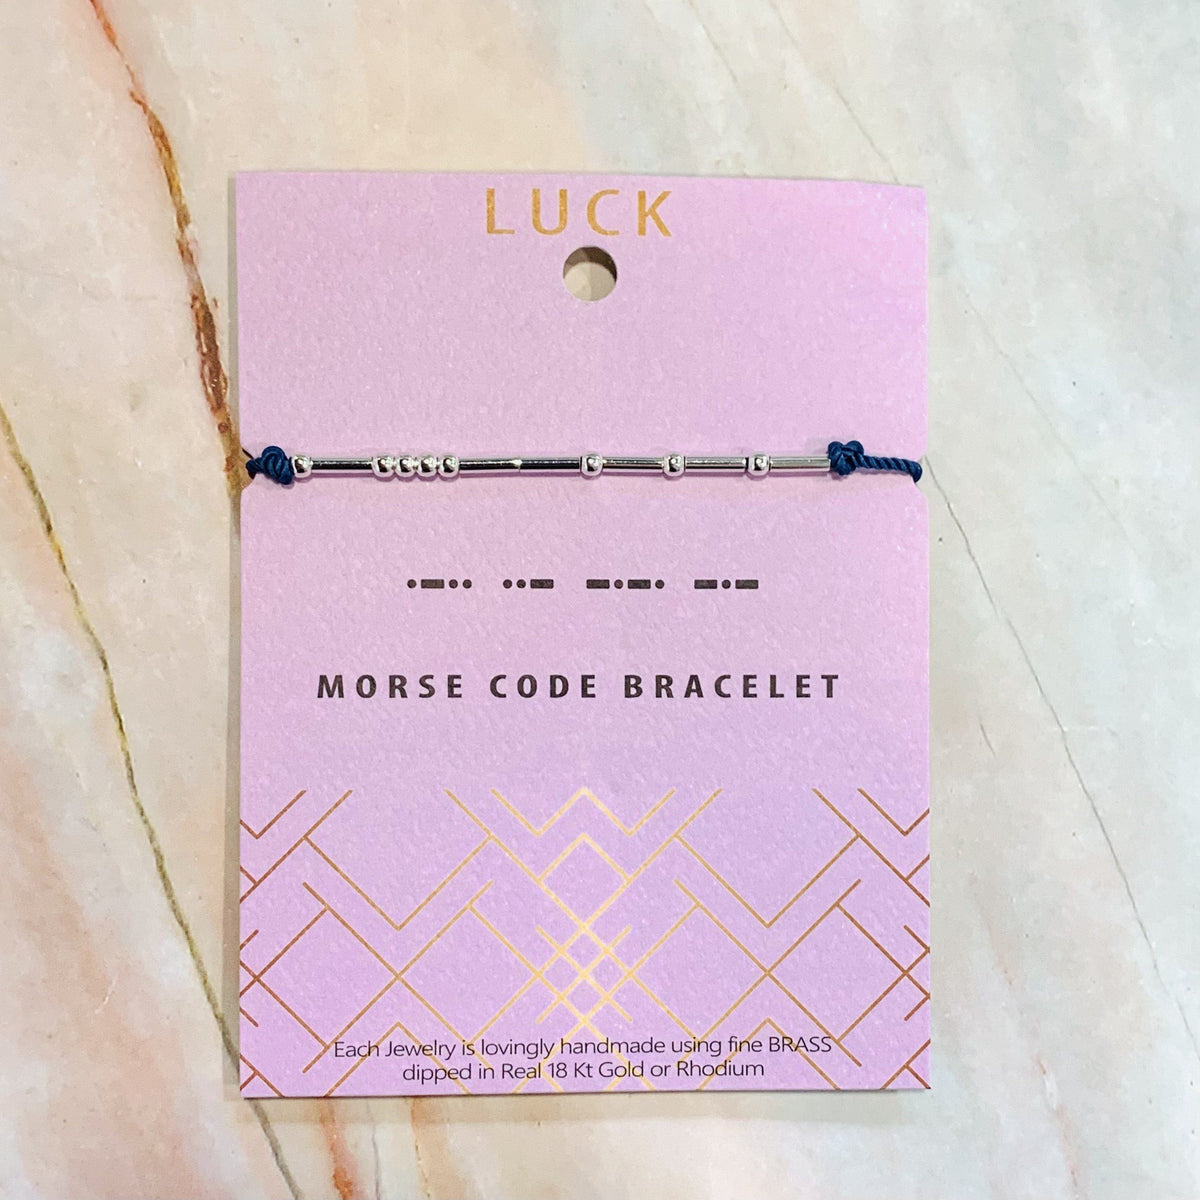 Morse Code Bracelet Lauren-Spencer Luck 